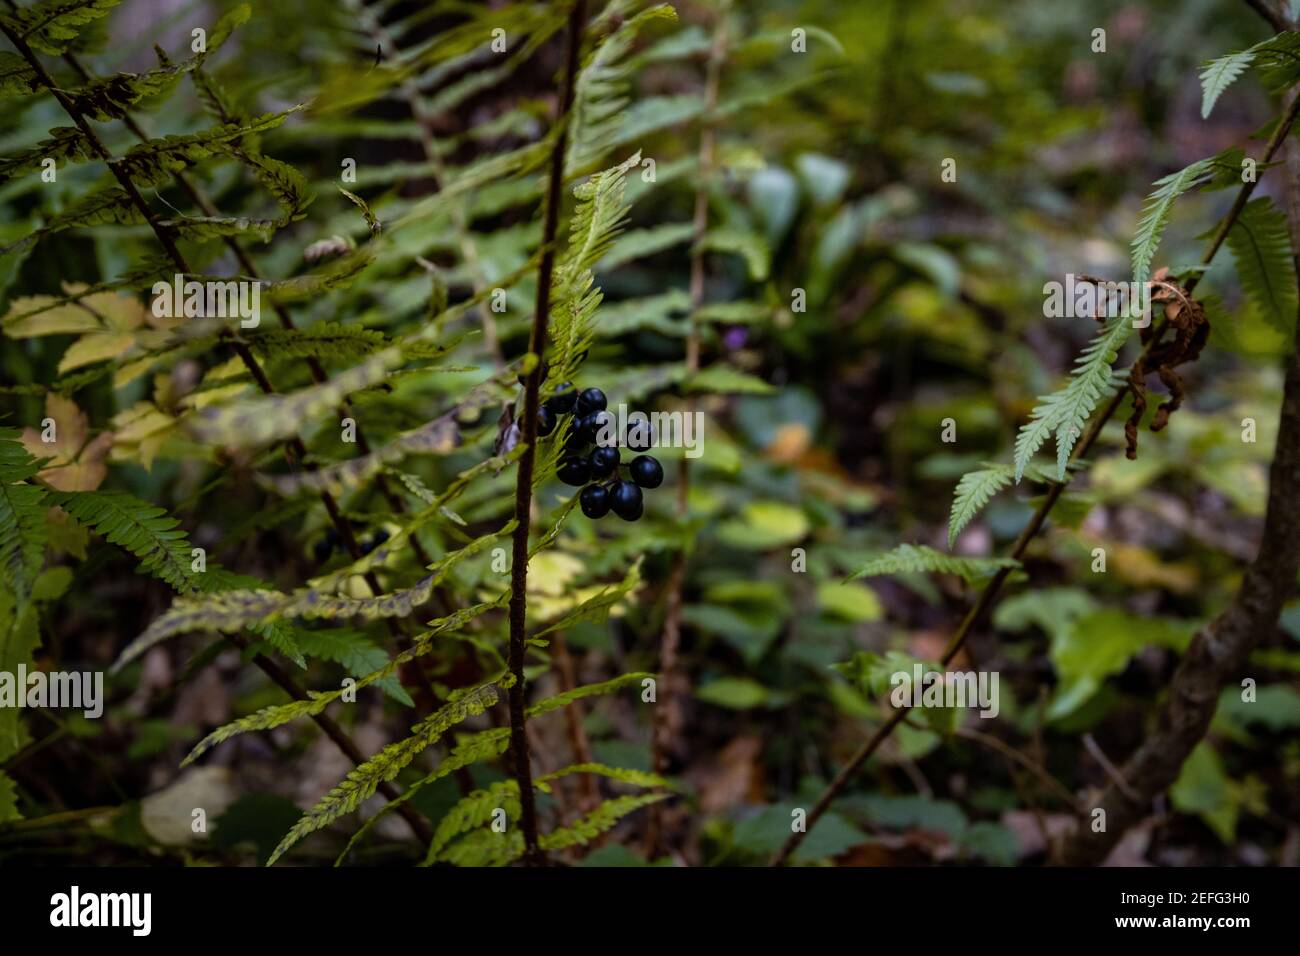 Schwarze Beeren auf einem Busch von wildem Gehege (Ligustrum vulgare), auch bekannt als gemeiner Gehege oder europäischer Gehege Stockfoto